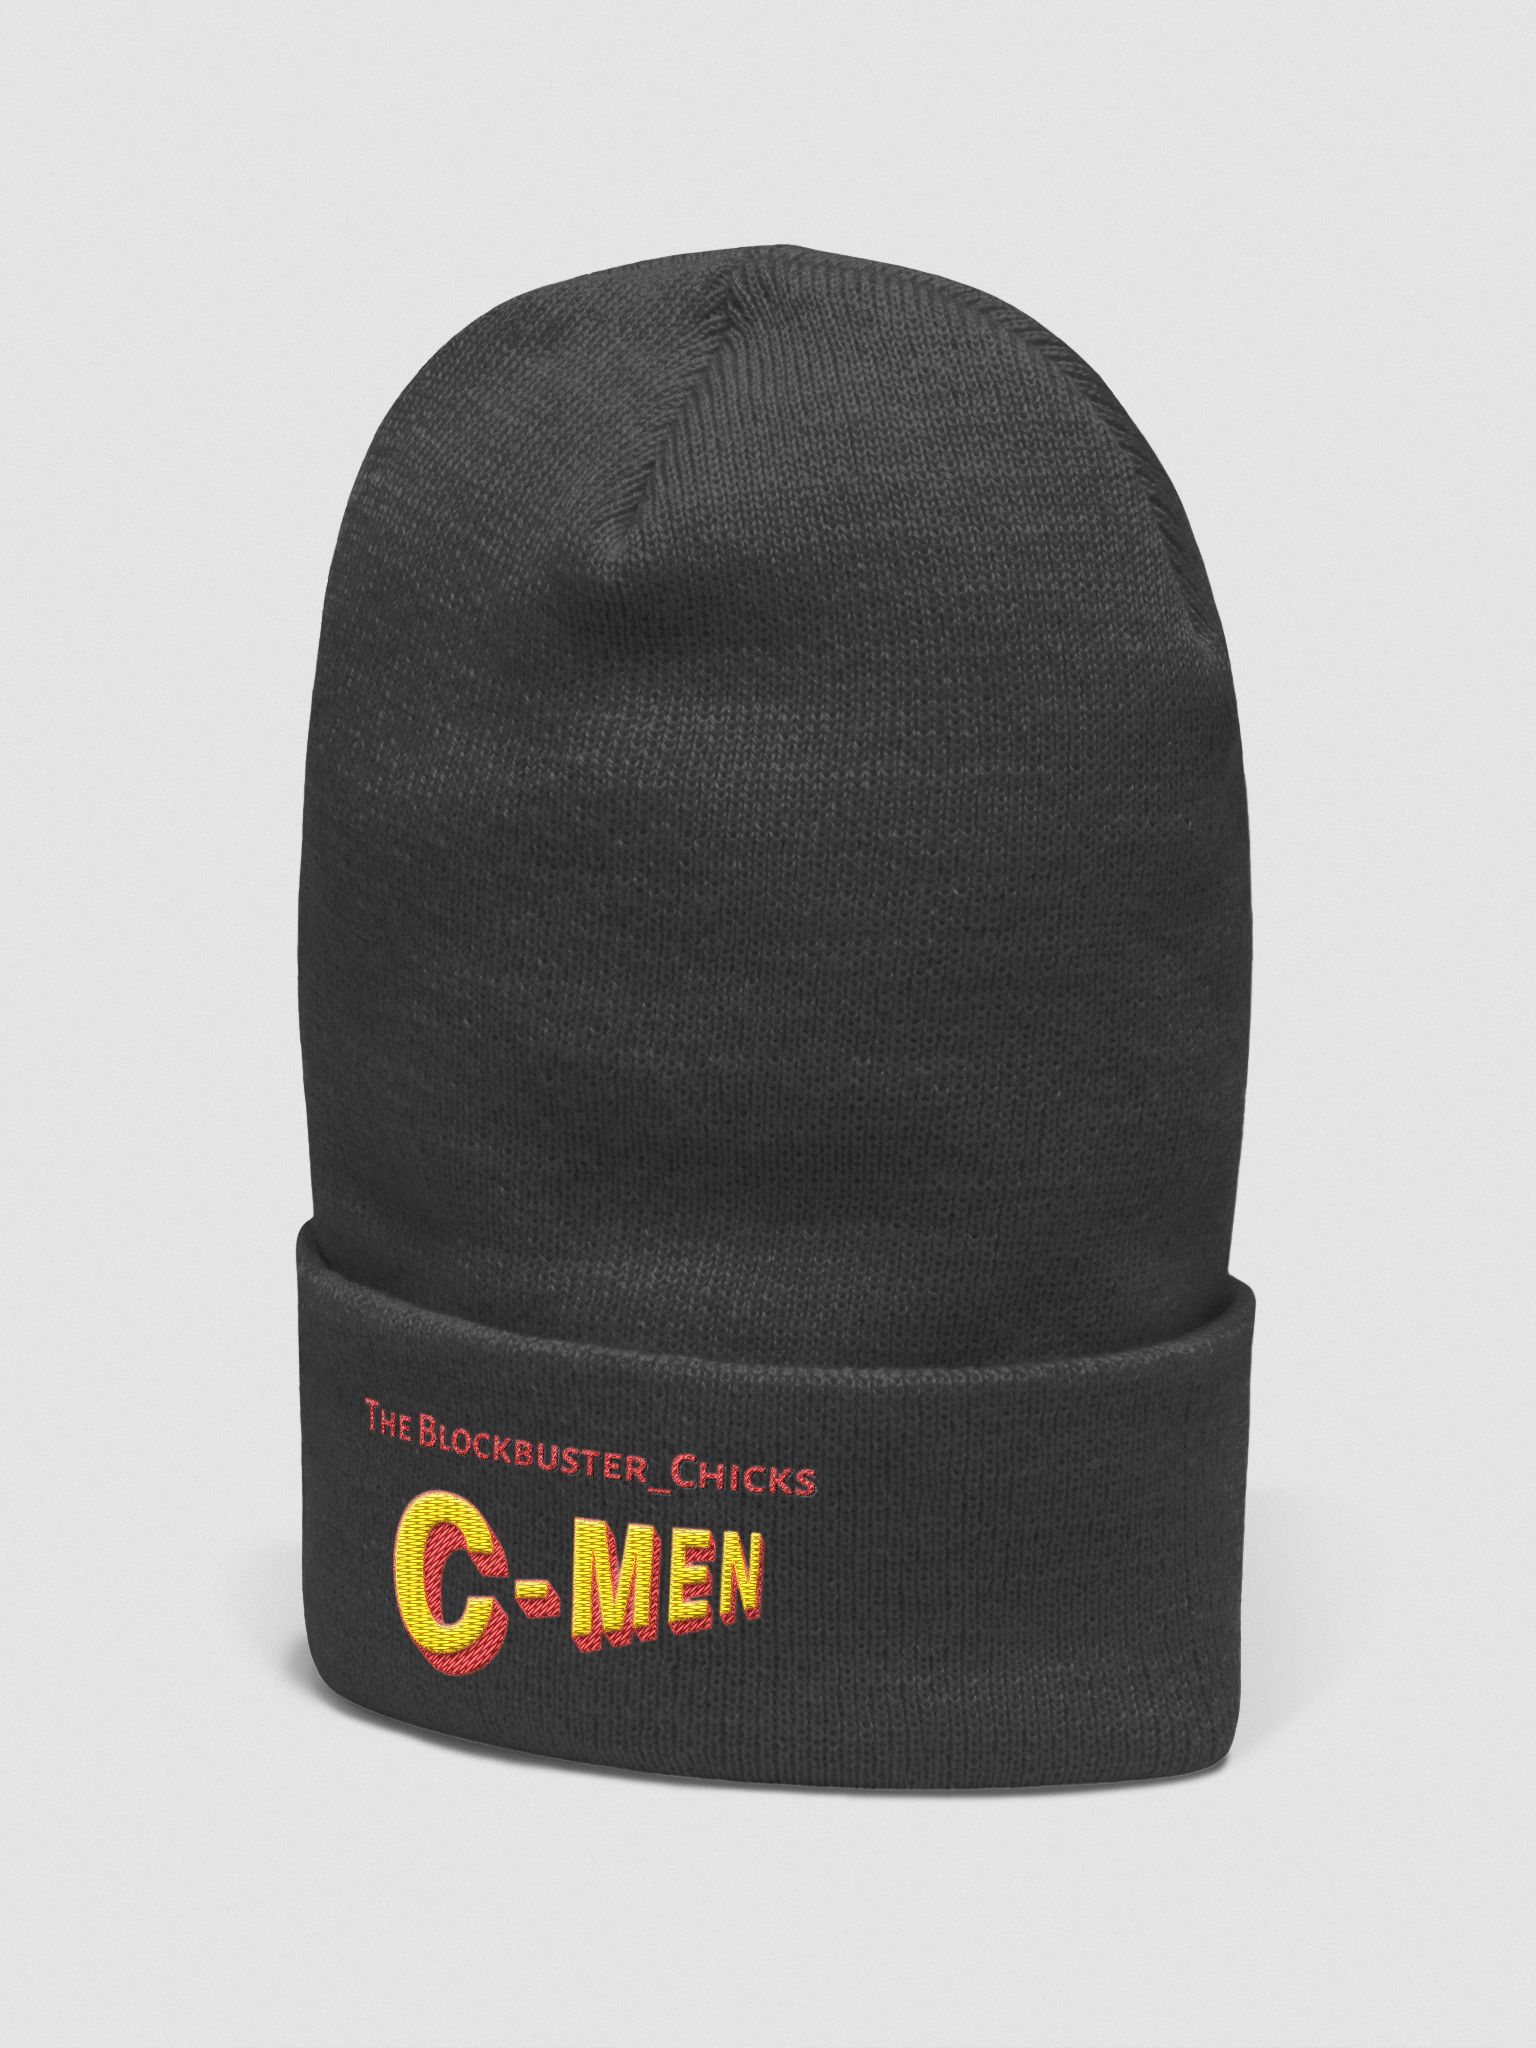 black beanie hat for men